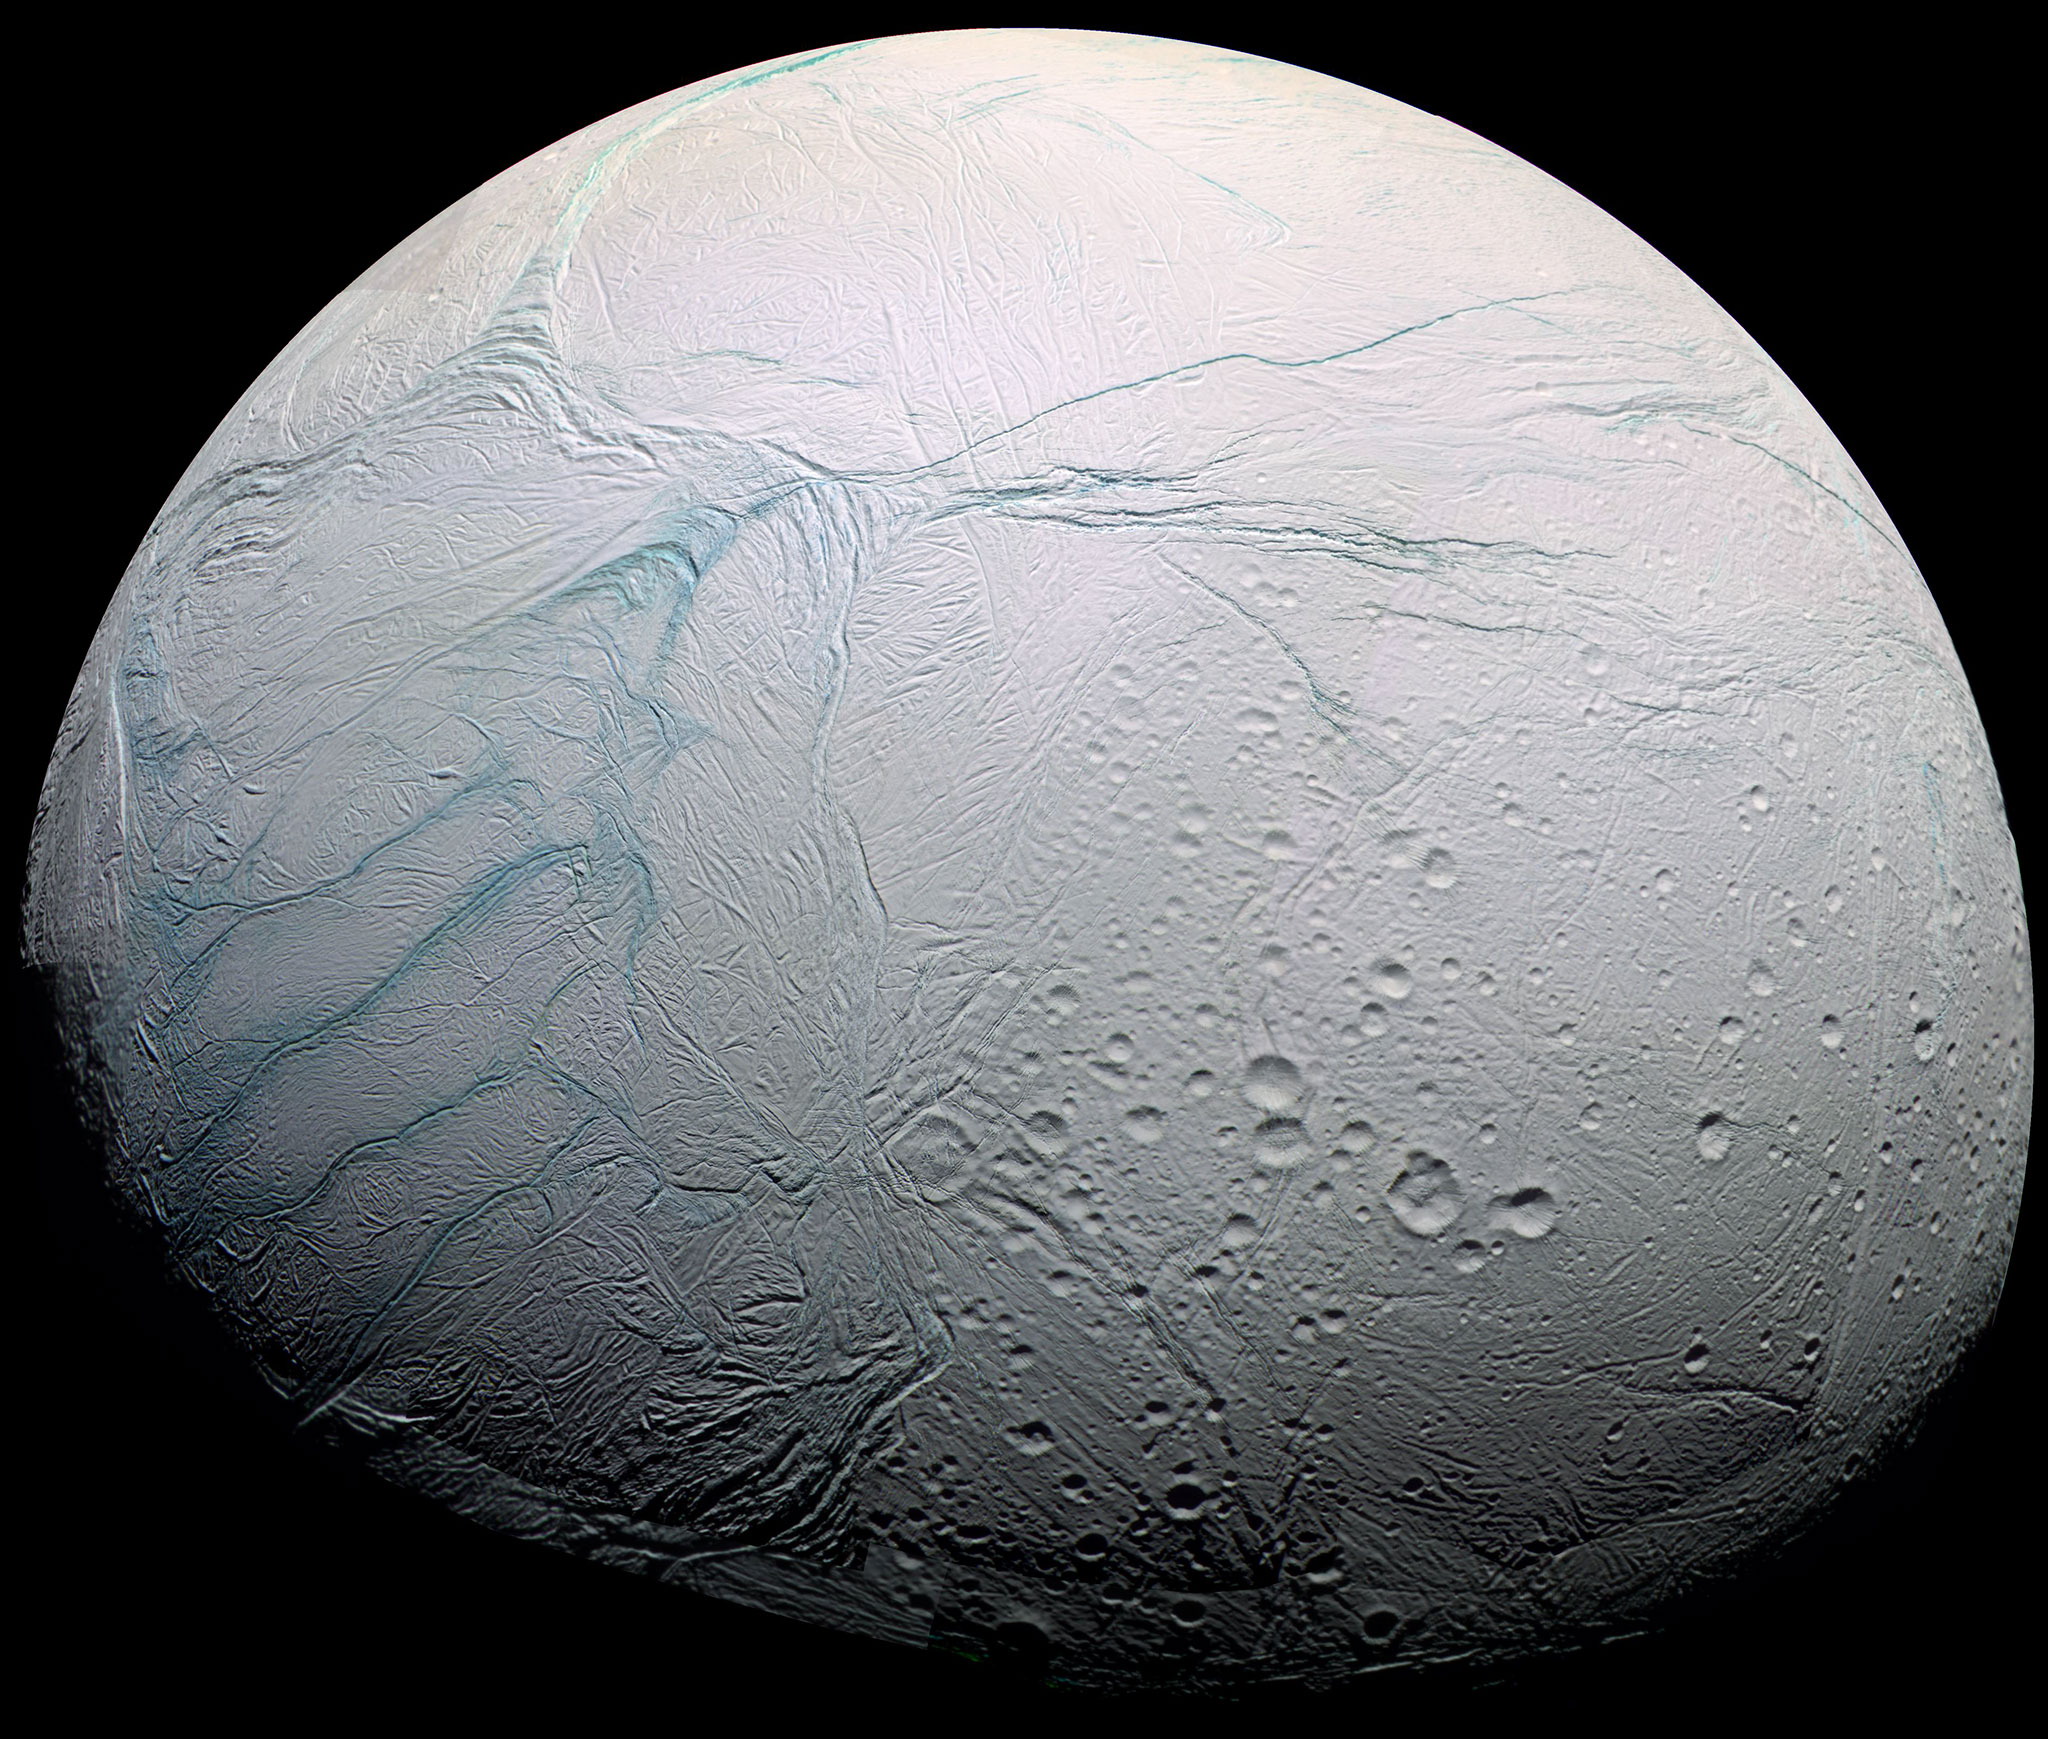 La lune&nbsp;Encelade photographiée par Cassini. Selon un nouveau modèle, l’épaisseur de la banquise de ce satellite de Saturne de 500 km de diamètre atteint 35 km au niveau de son équateur et moins de 5 km dans la région active du pôle sud (rayures à gauche sur l'image) où sont observés des geysers. © Nasa, ESA, JPL, Cassini Imaging Team, SSI